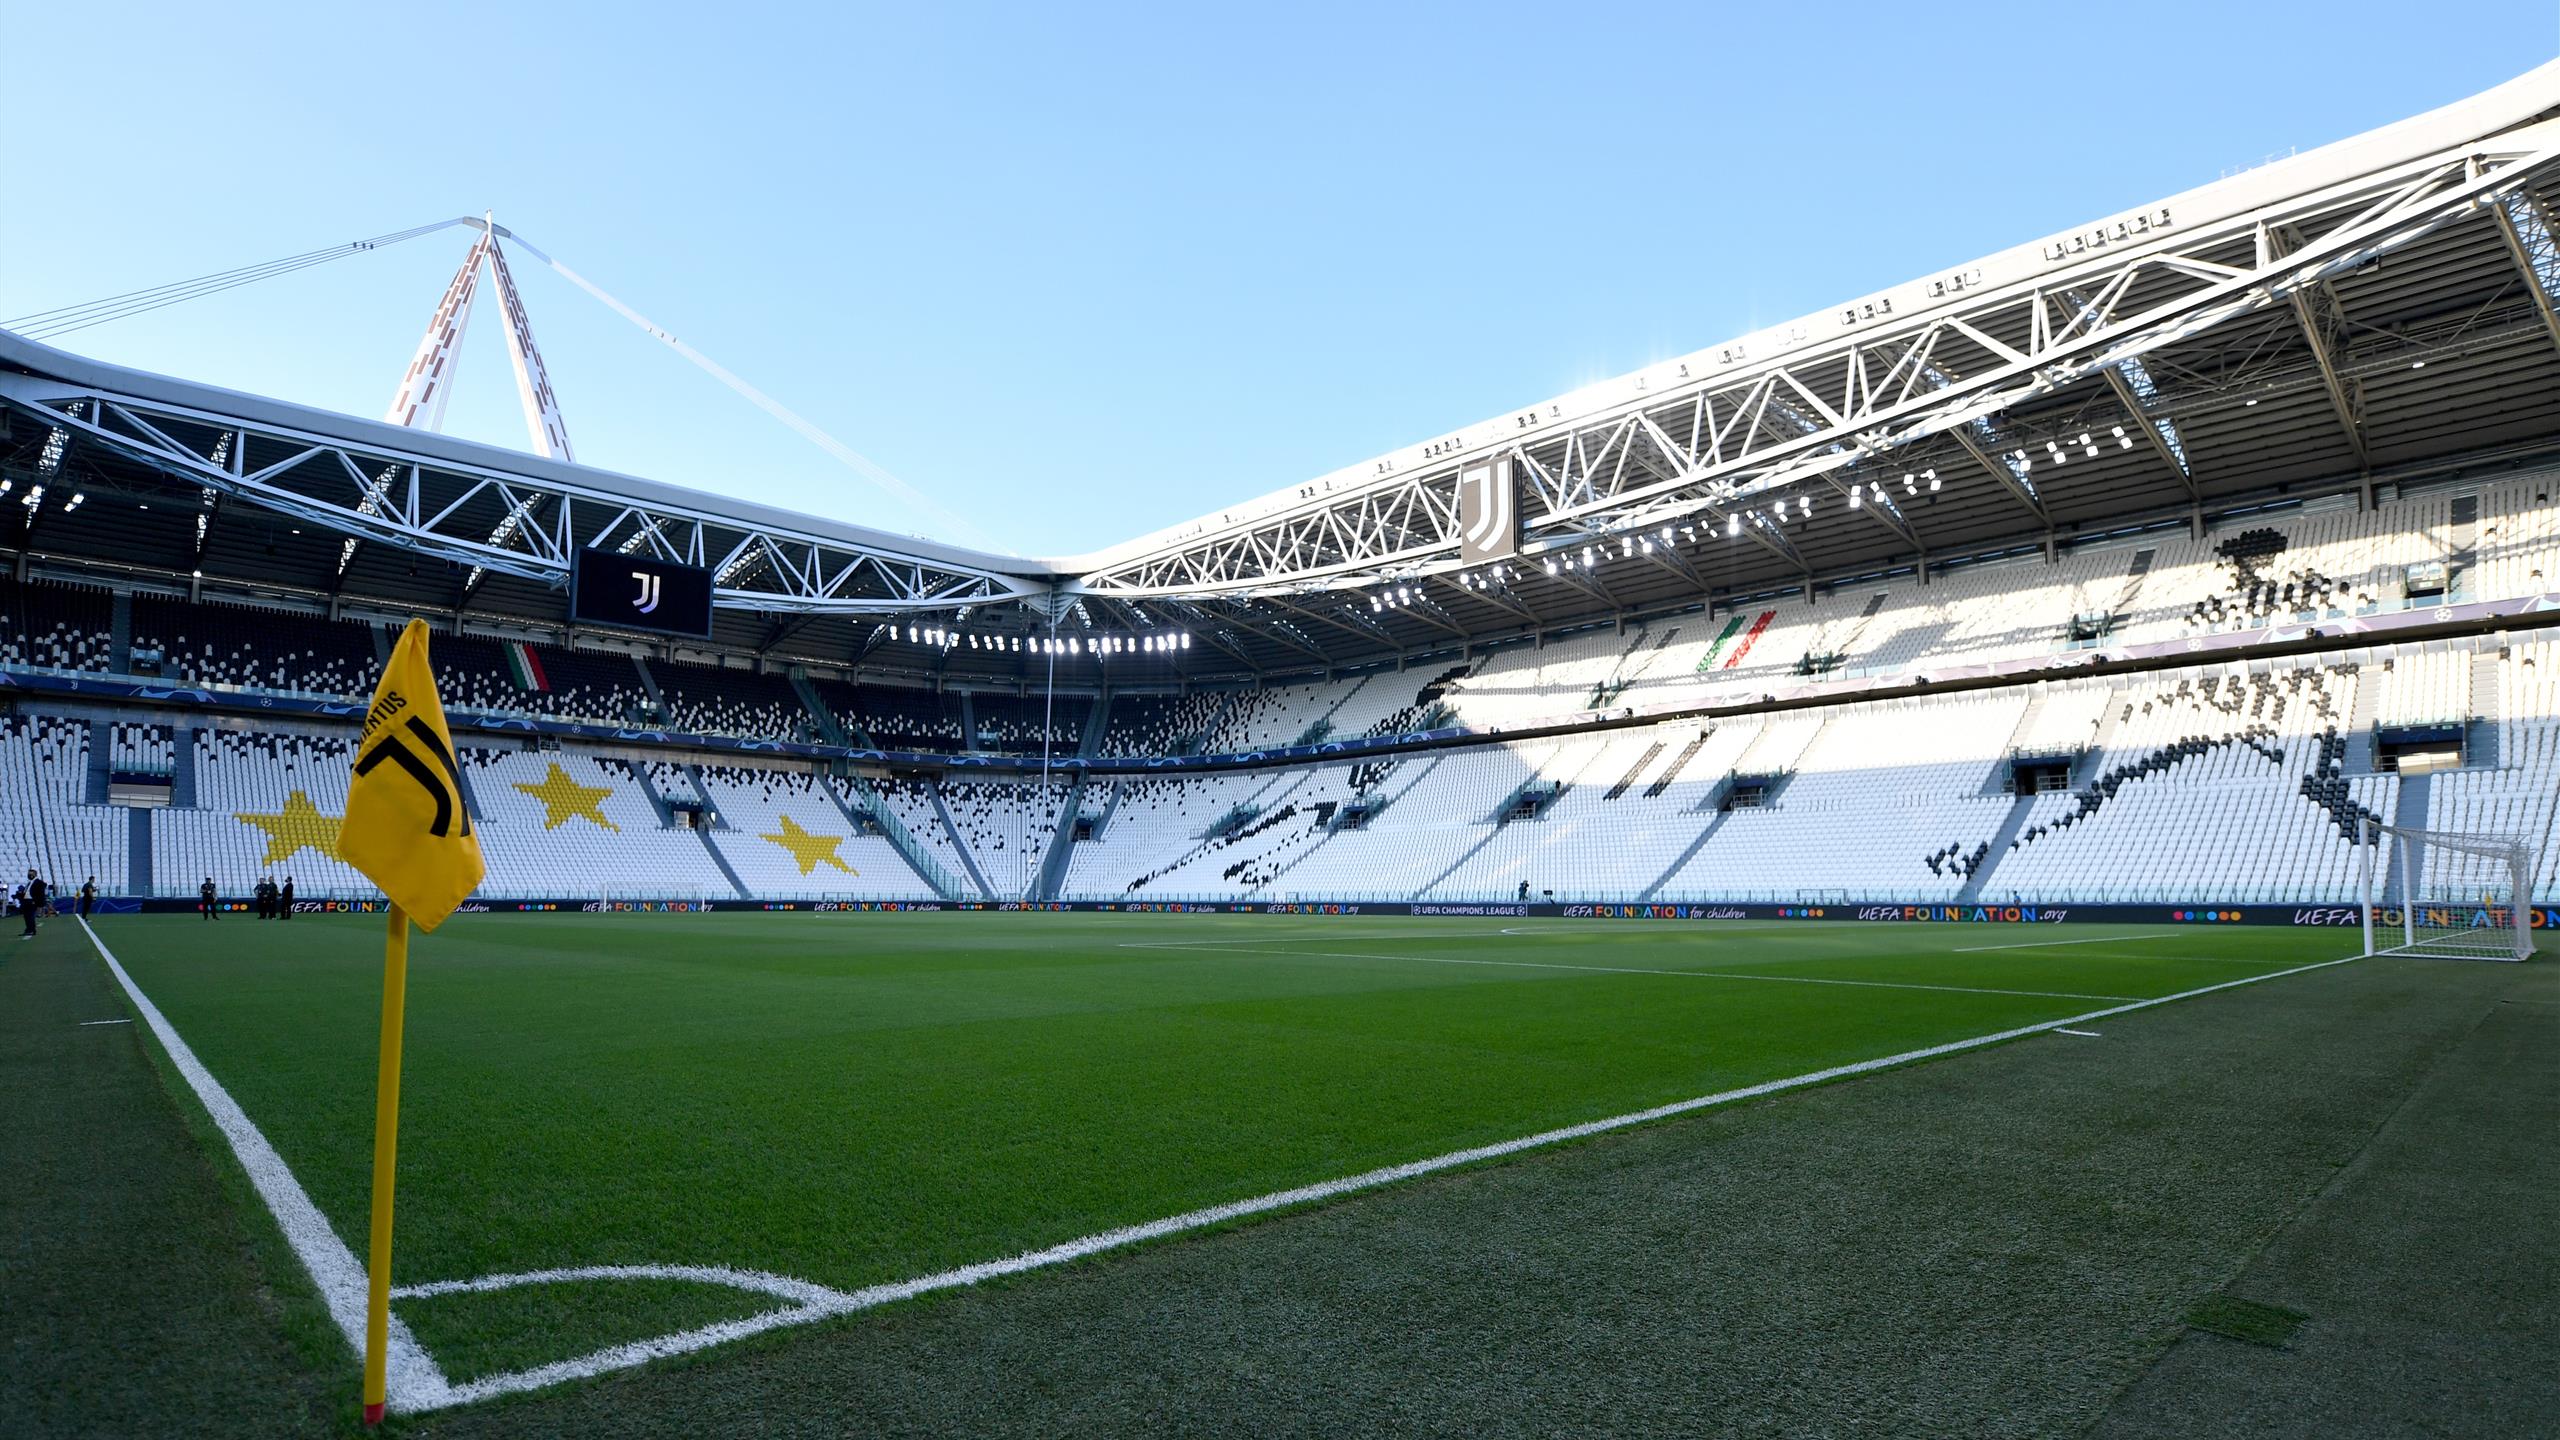 Plusvalenze Juve, FIGC riapre il processo. Il club: "Noi corretti"